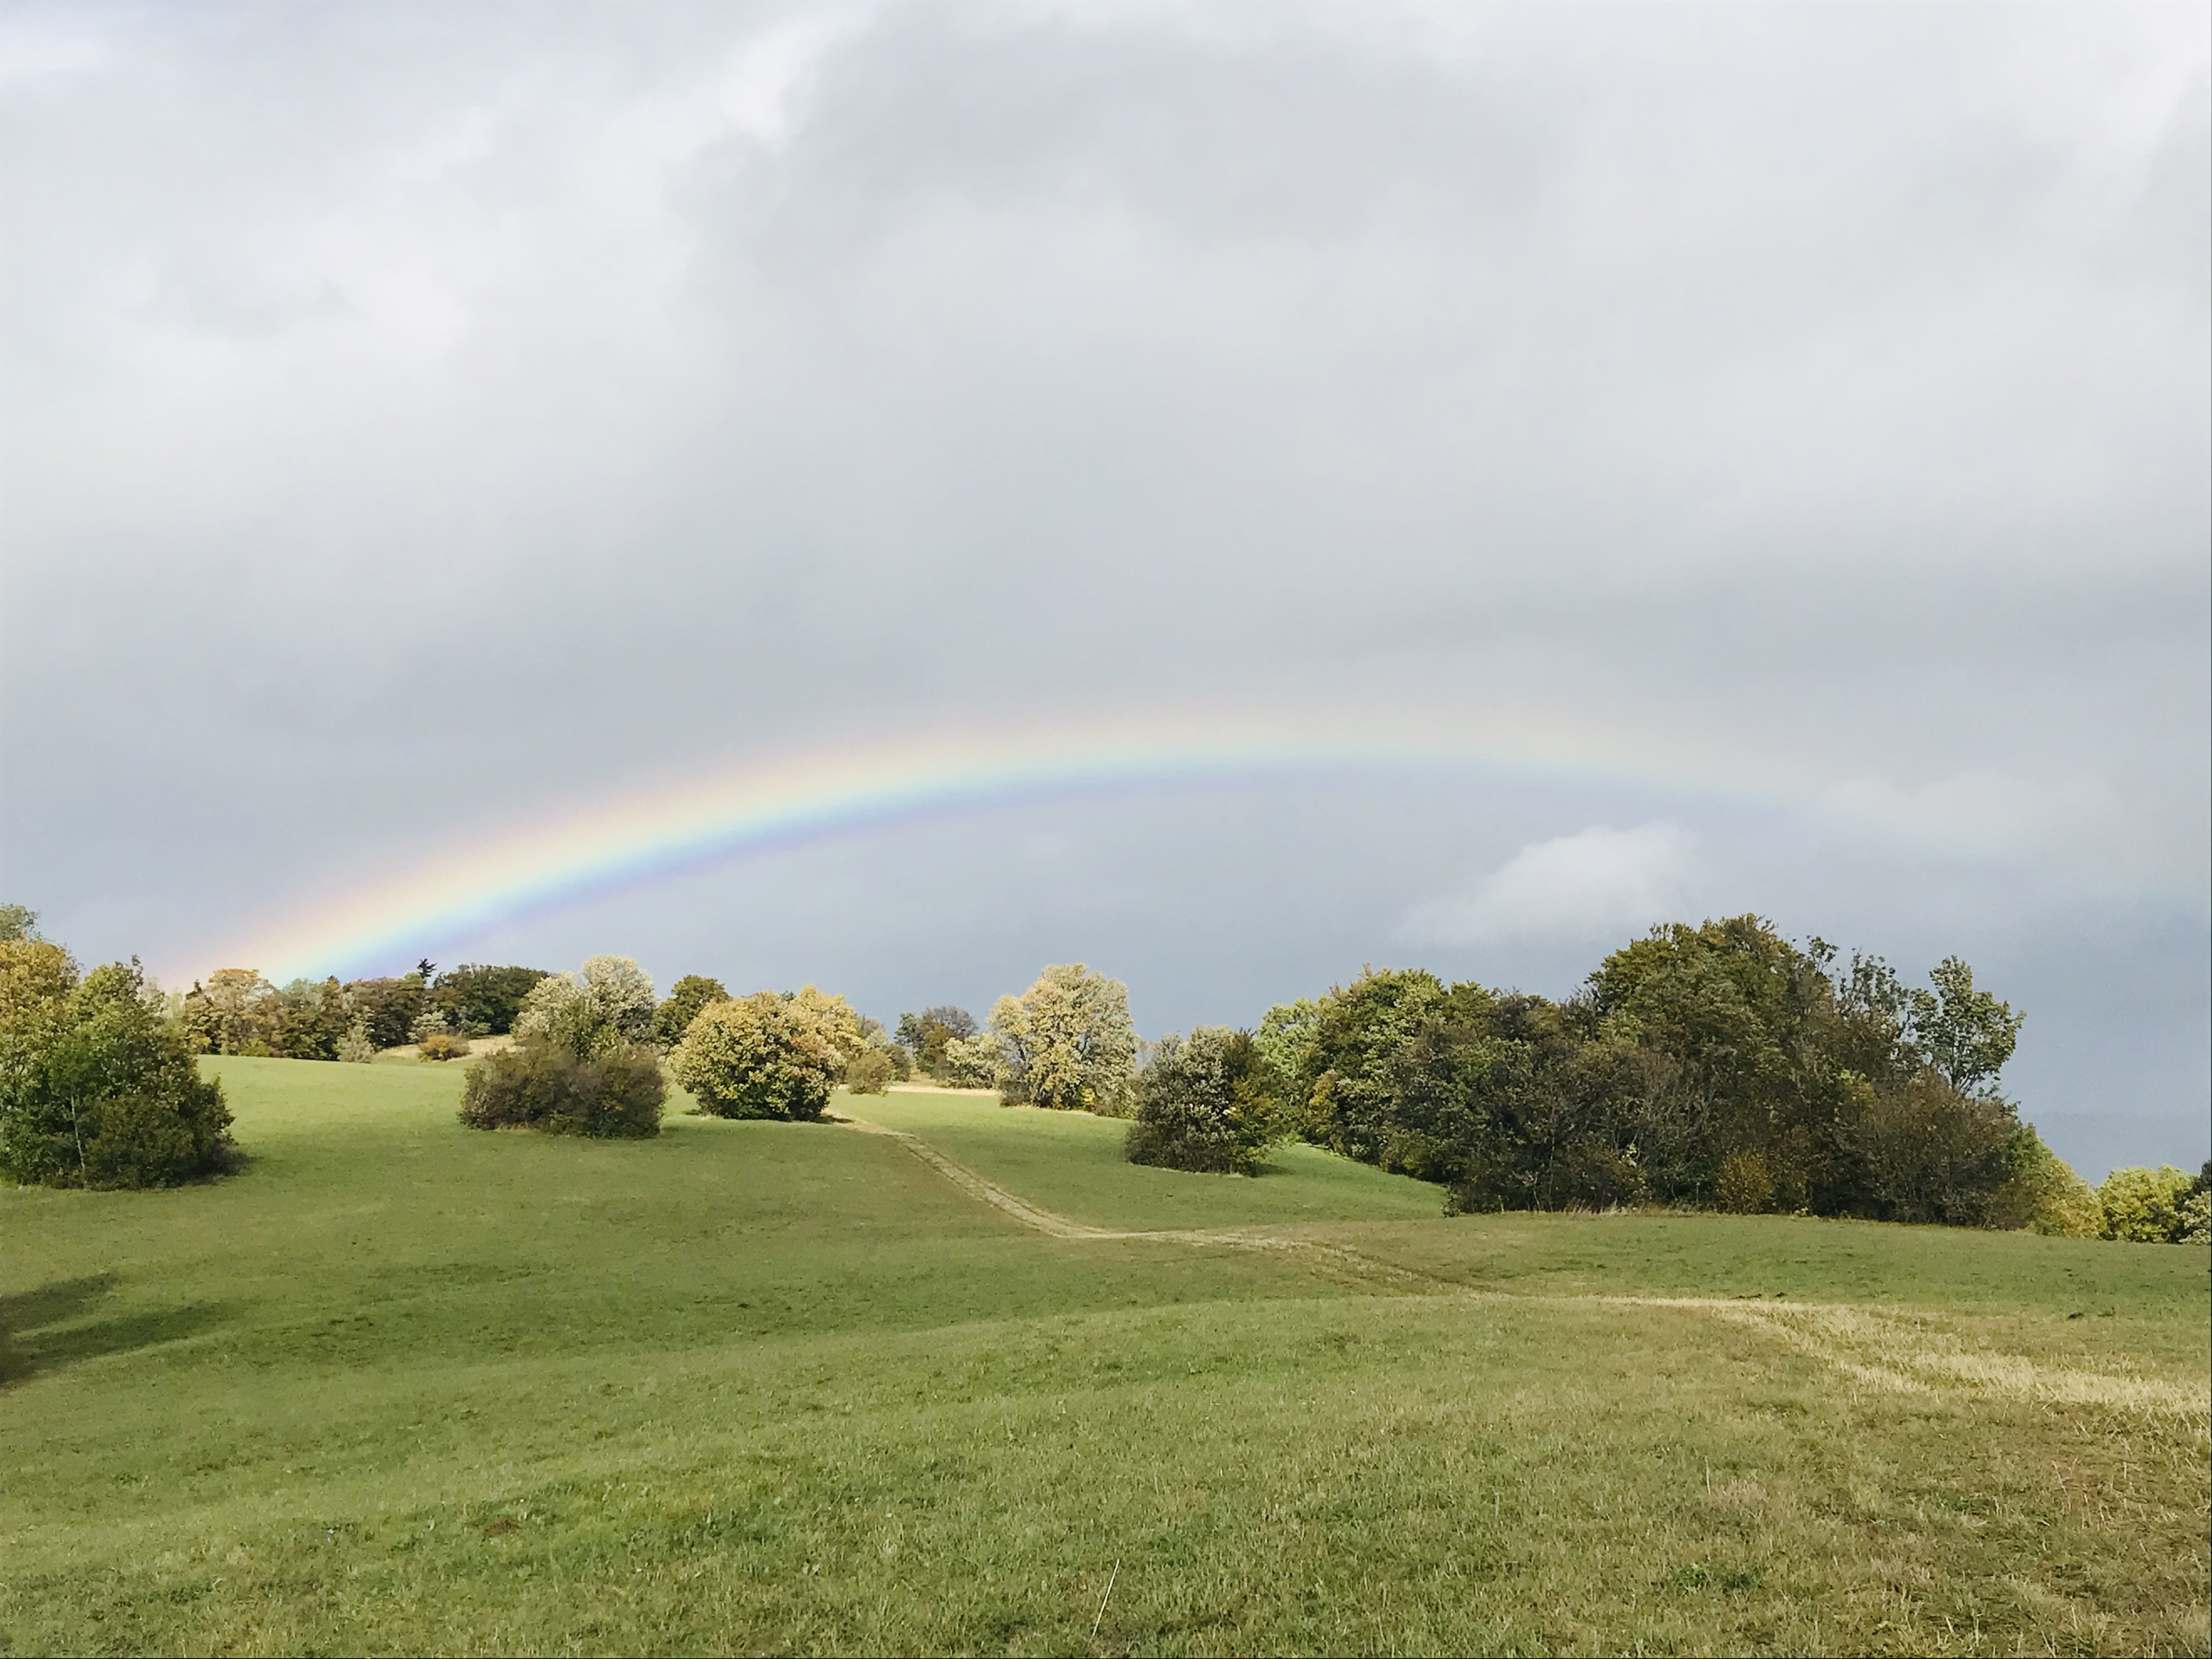 Der Regenbogen als Gottes Zeichen zur Bewahrung der Schöpfung. Foto: Sibylle Wiesemann